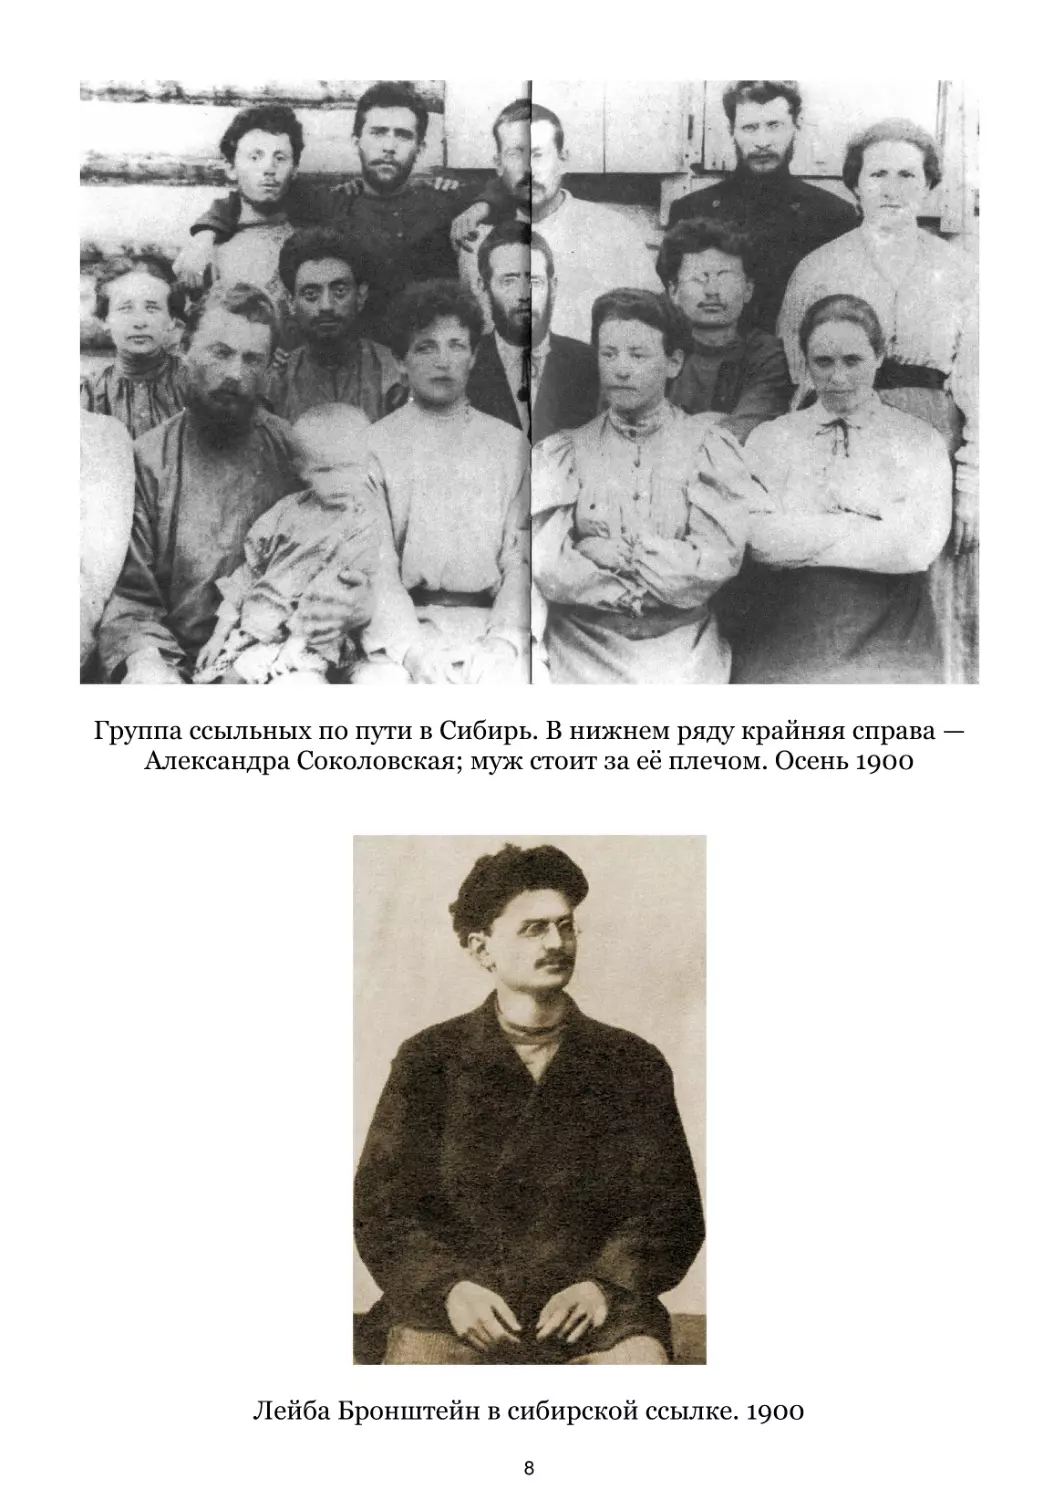 Группа ссыльных по пути в Сибирь. Осень 1900
Лейба Бронштейн в сибирской ссылке. 1900